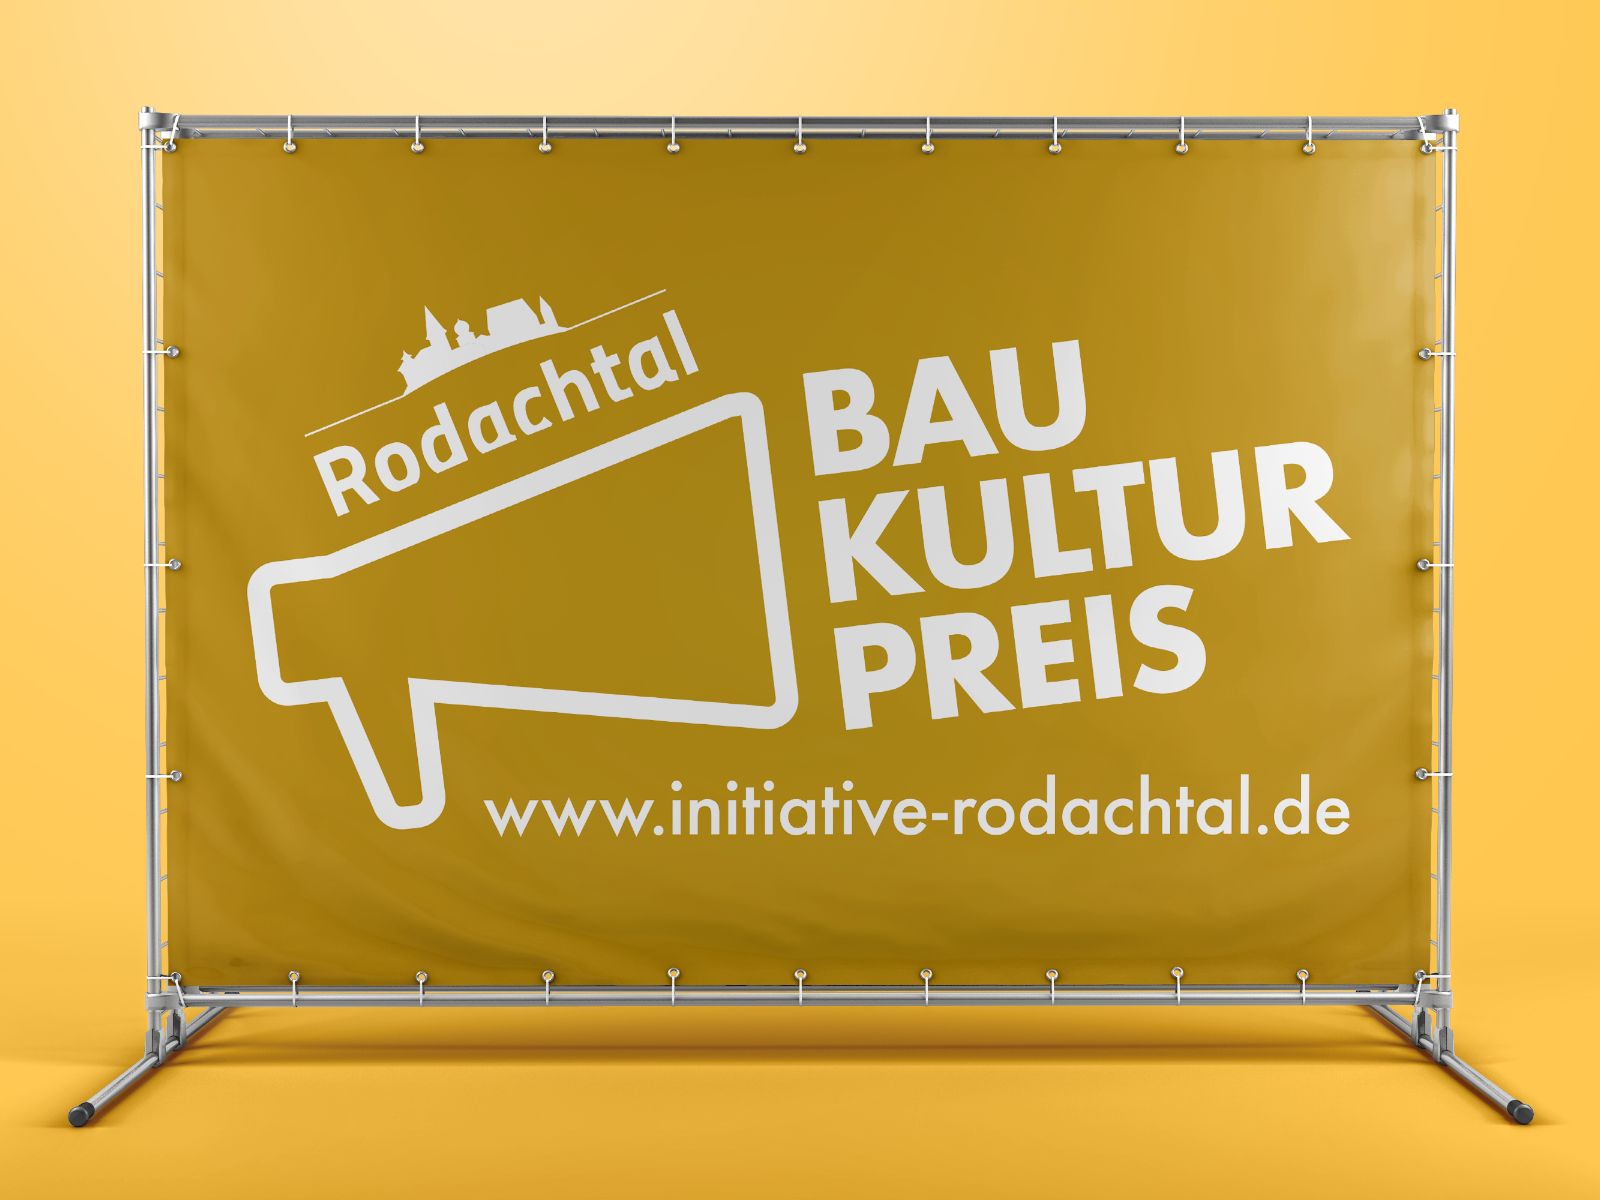 Rodachtal Banner